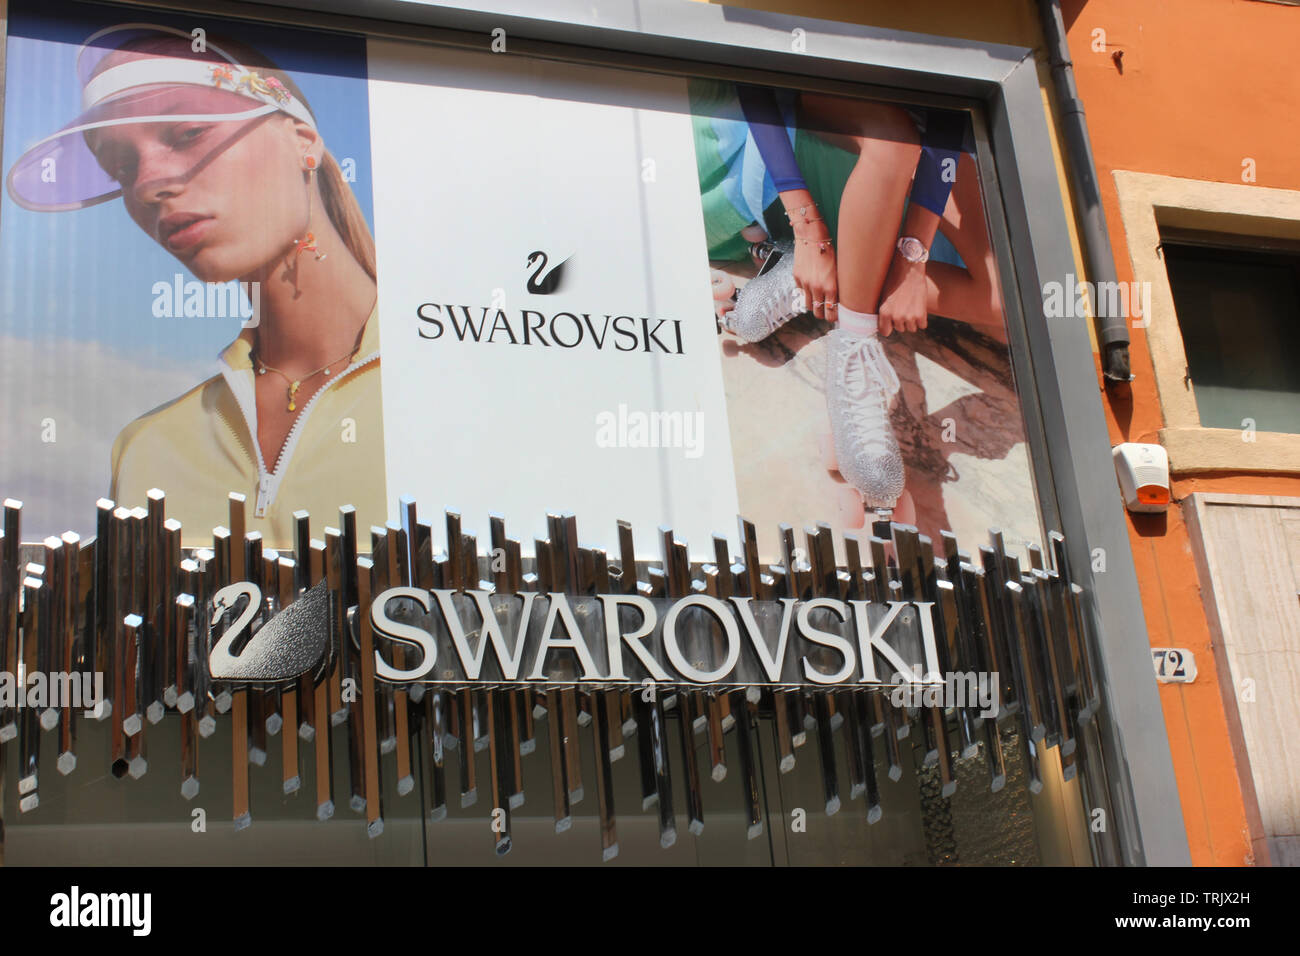 Swarovsky gioielli, negozio di fronte, Verona. Più grande della pubblicità a grandezza naturale. Foto Stock